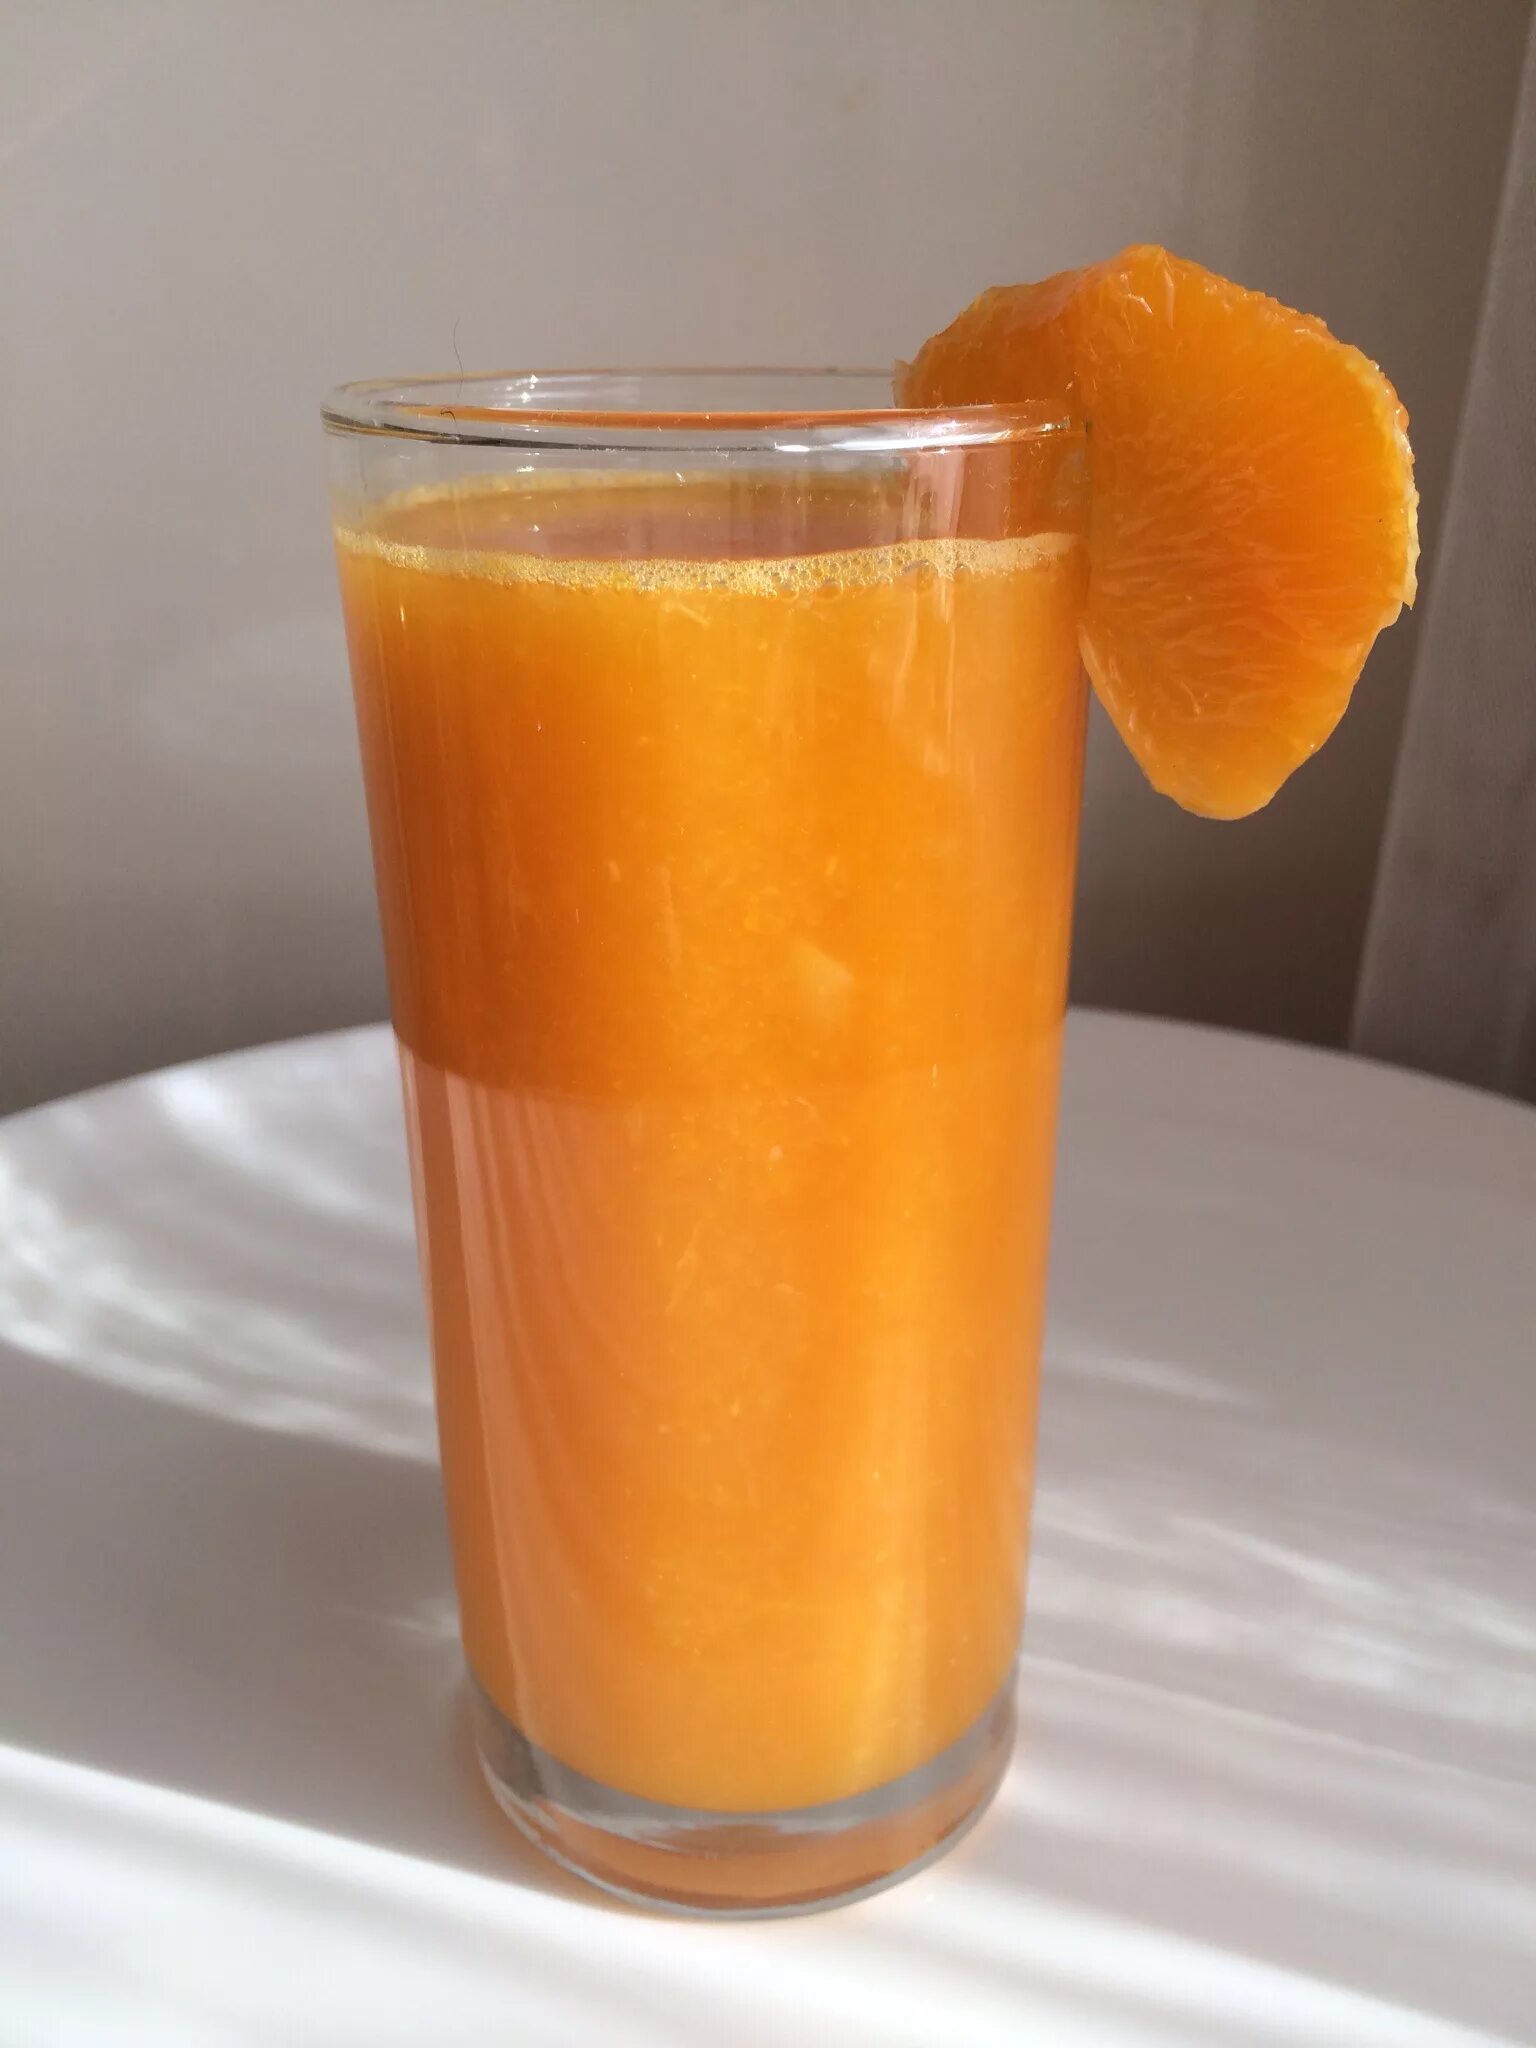 Мандариновый сок. Апельсиновый сок с мякотью в стакане. Свежевыжатый мандариновый сок. Стакан апельсинового сока. Мандаринов сок купить